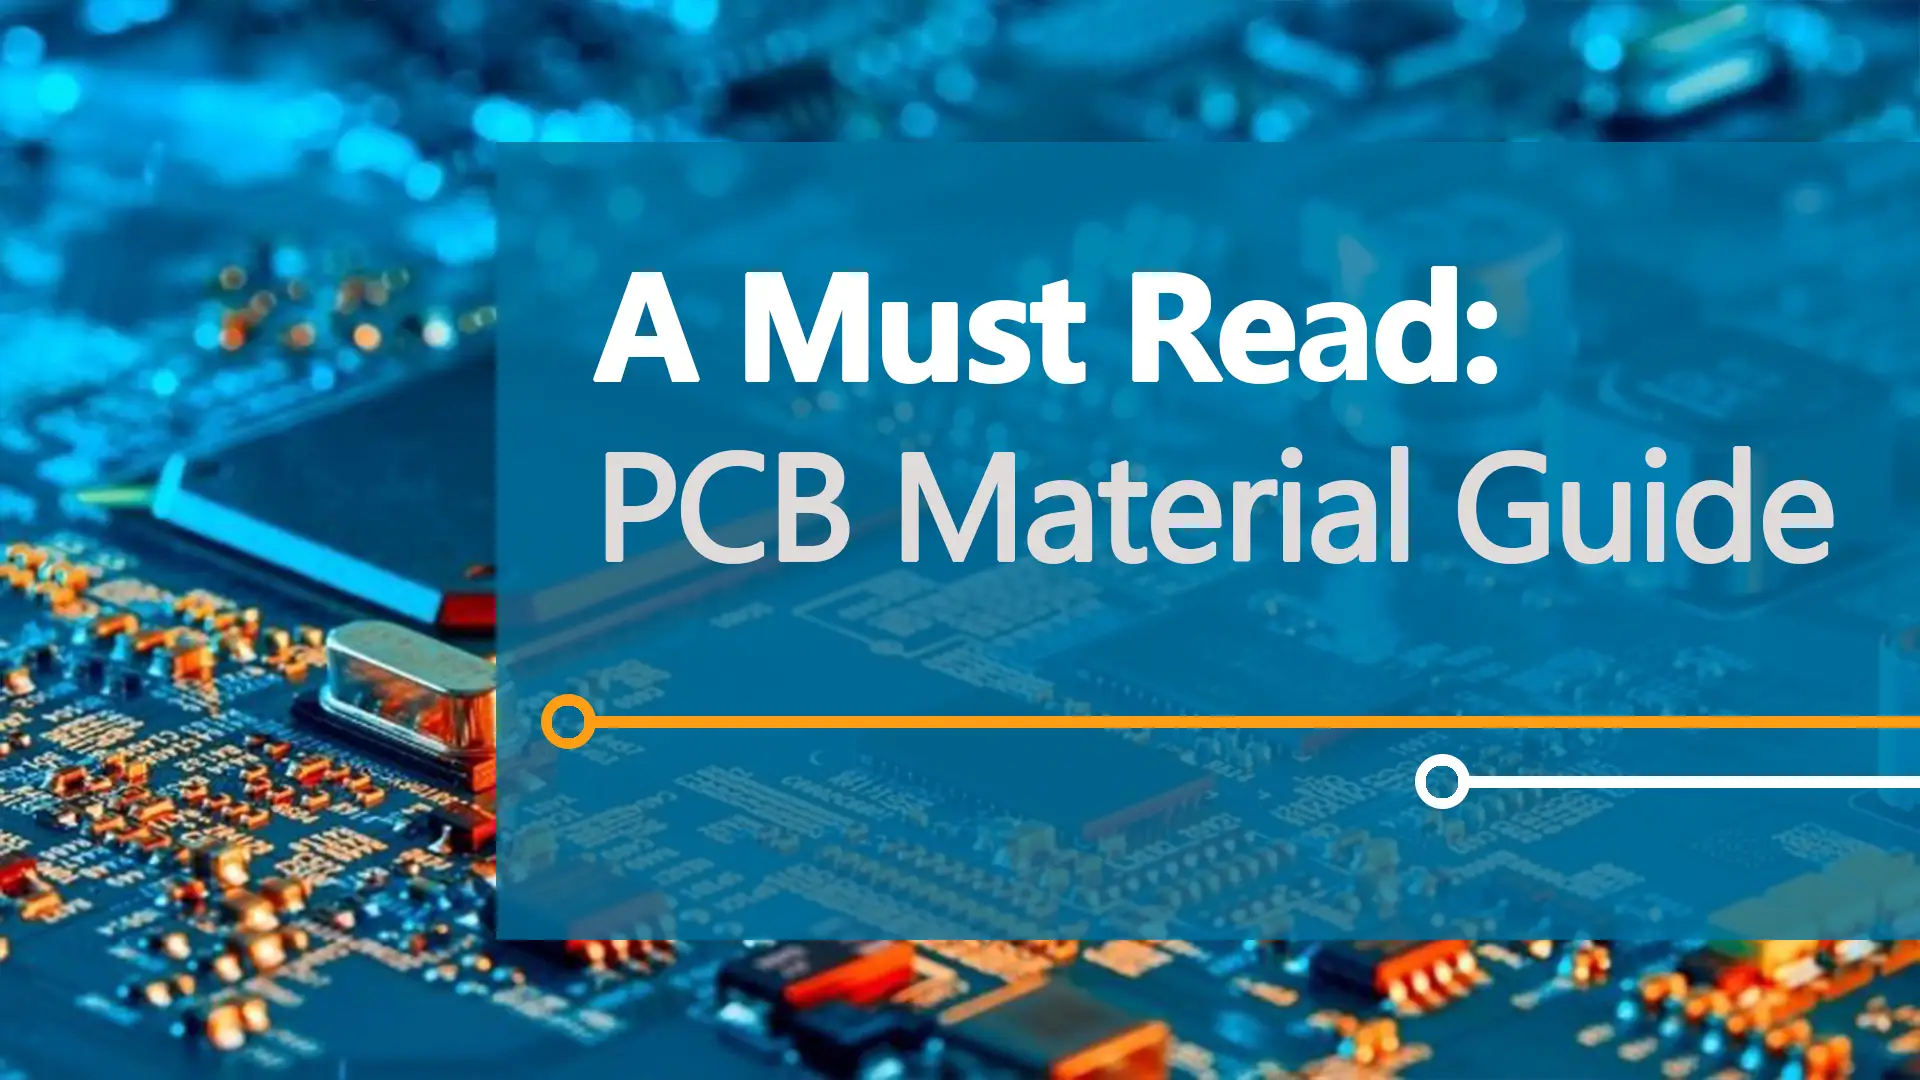 반드시 읽어야 할 책: PCB 재료 가이드